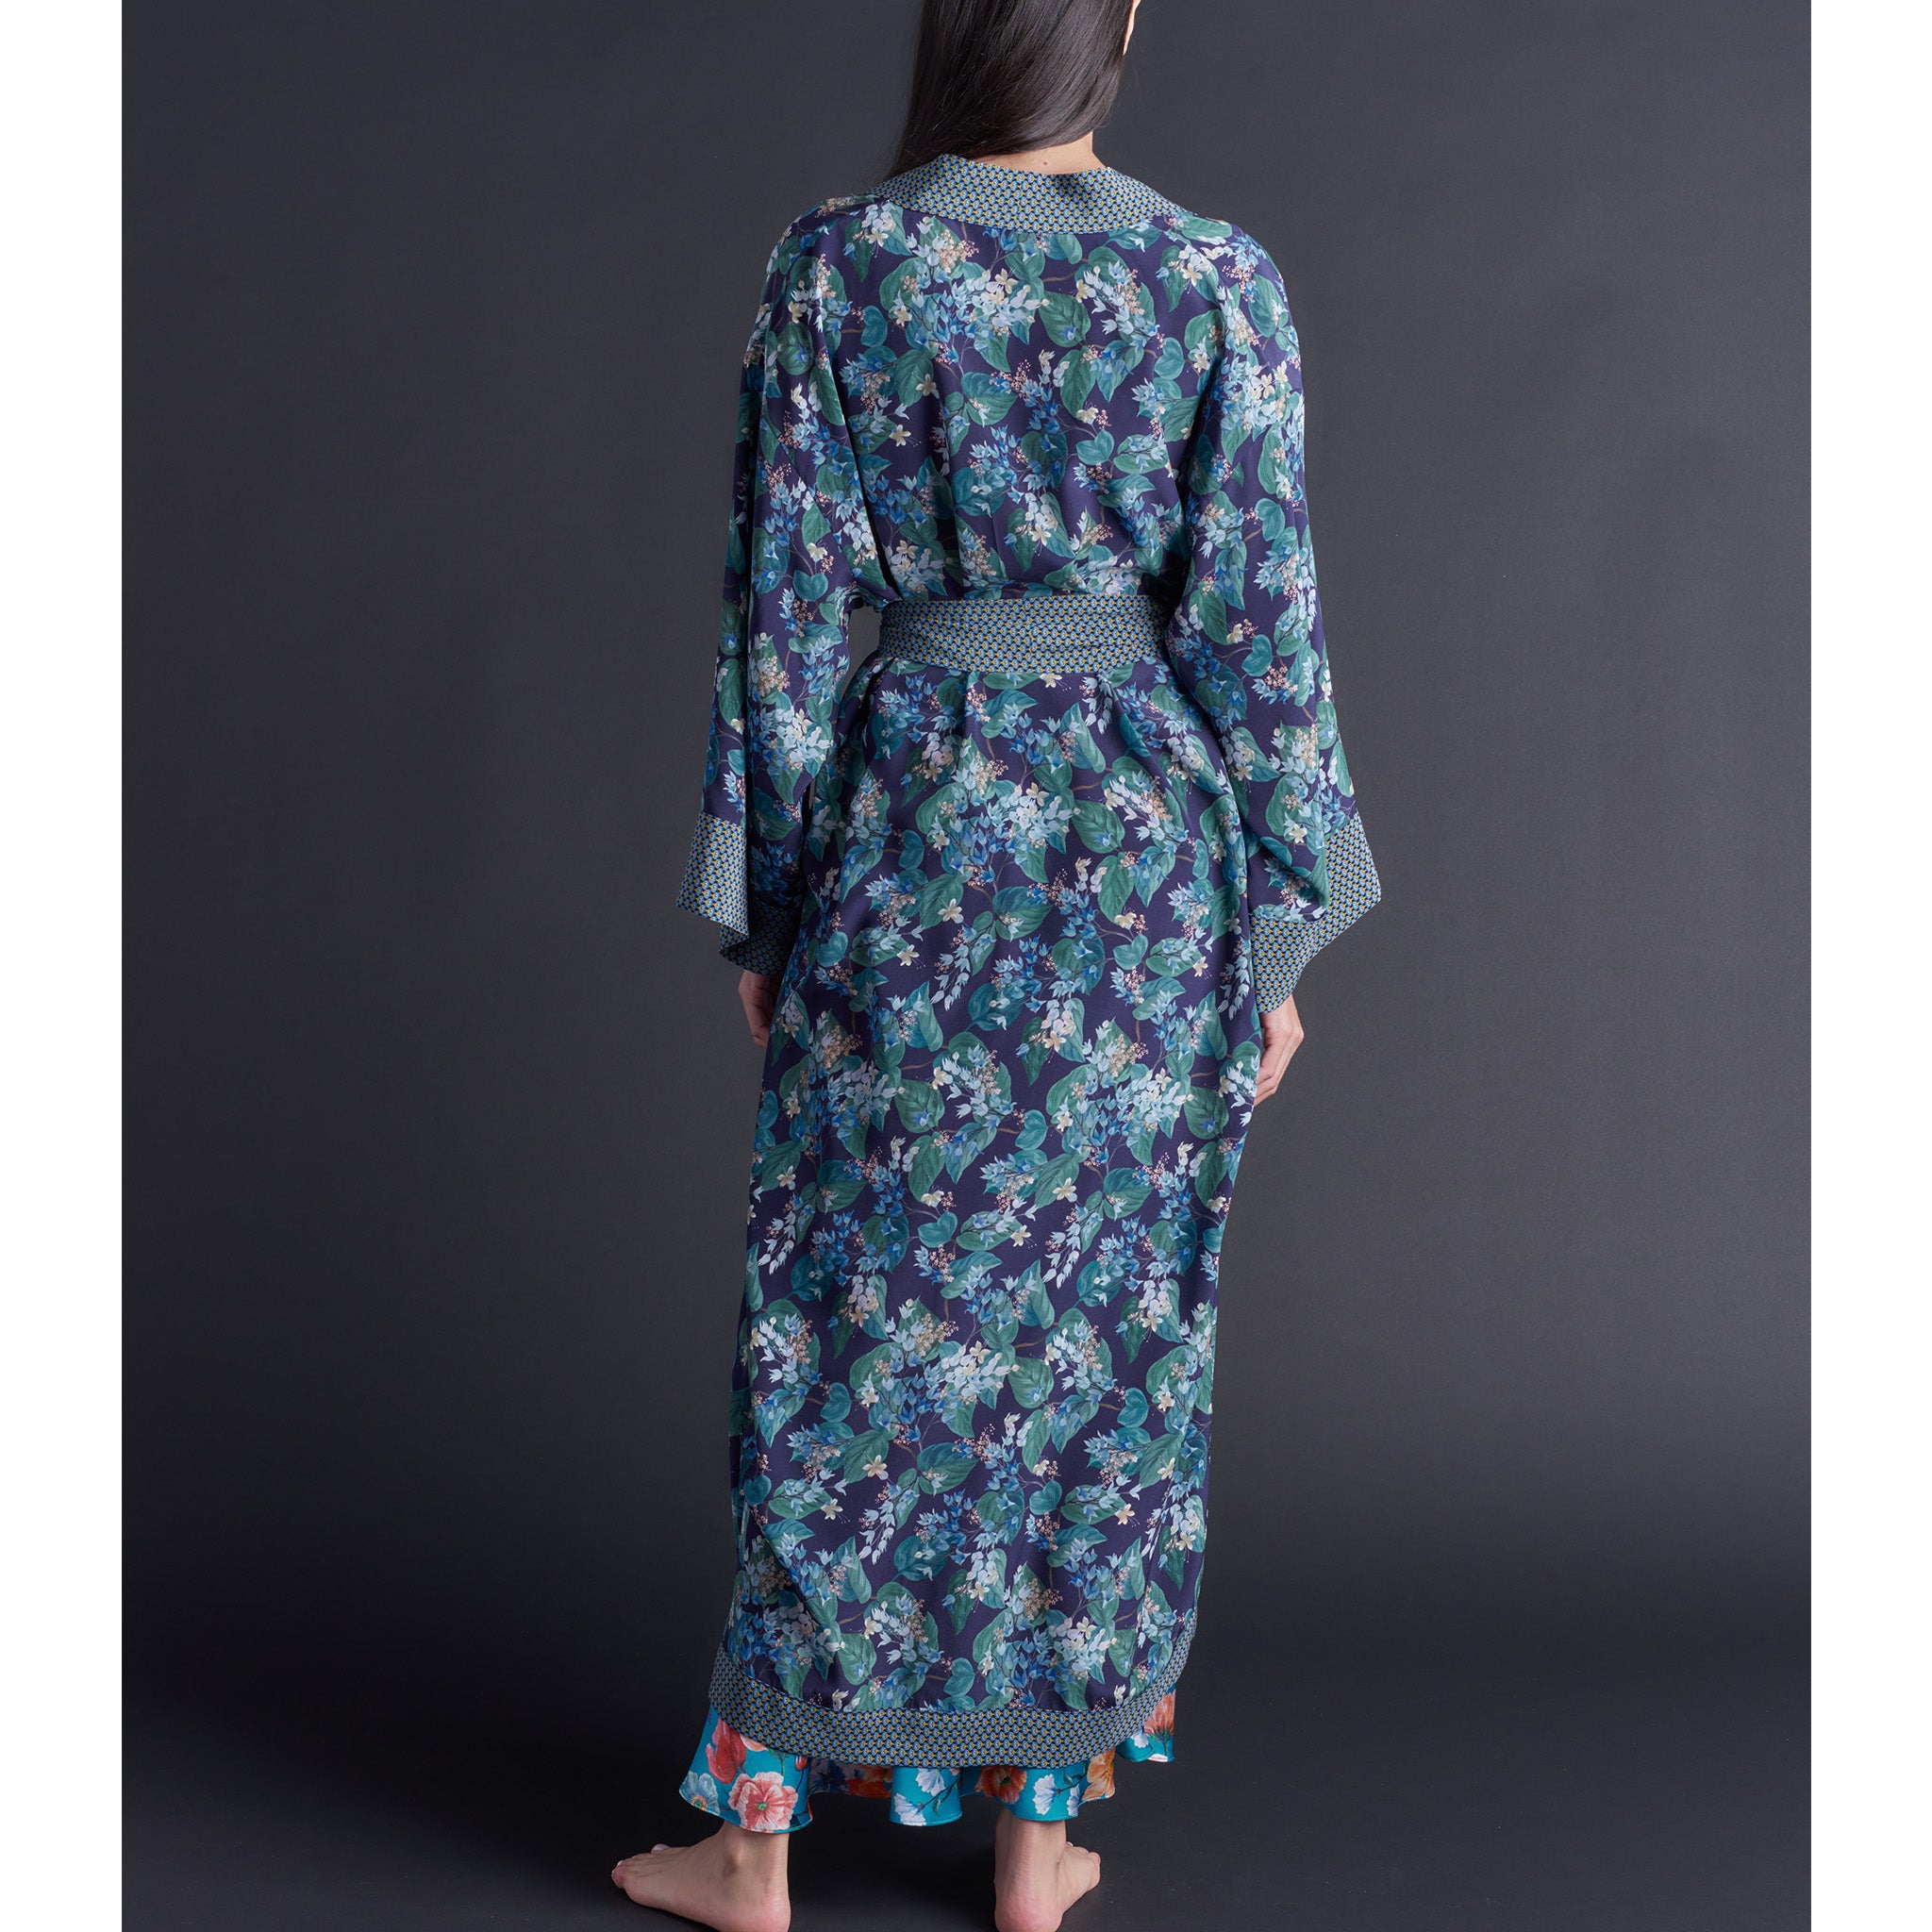 Asteria Kimono Robe in Osterley Liberty of London Print Silk Crepe De Chine